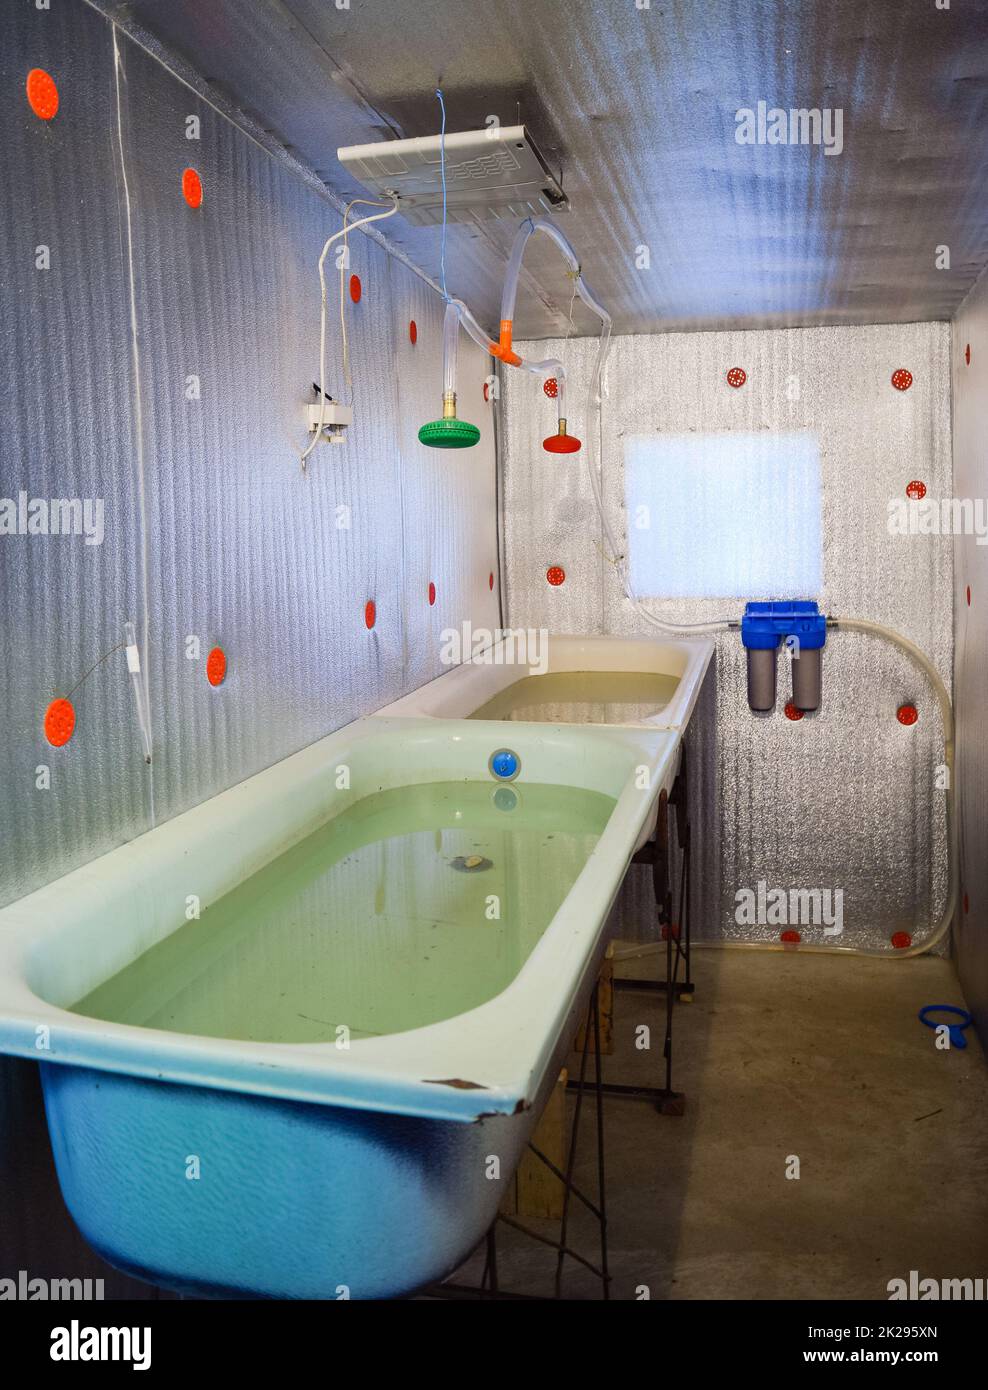 Una camera per far crescere gli avannotti. Vasca da bagno per la Repubblica federale di Iugoslavia. Un pesce-vivaio Foto Stock